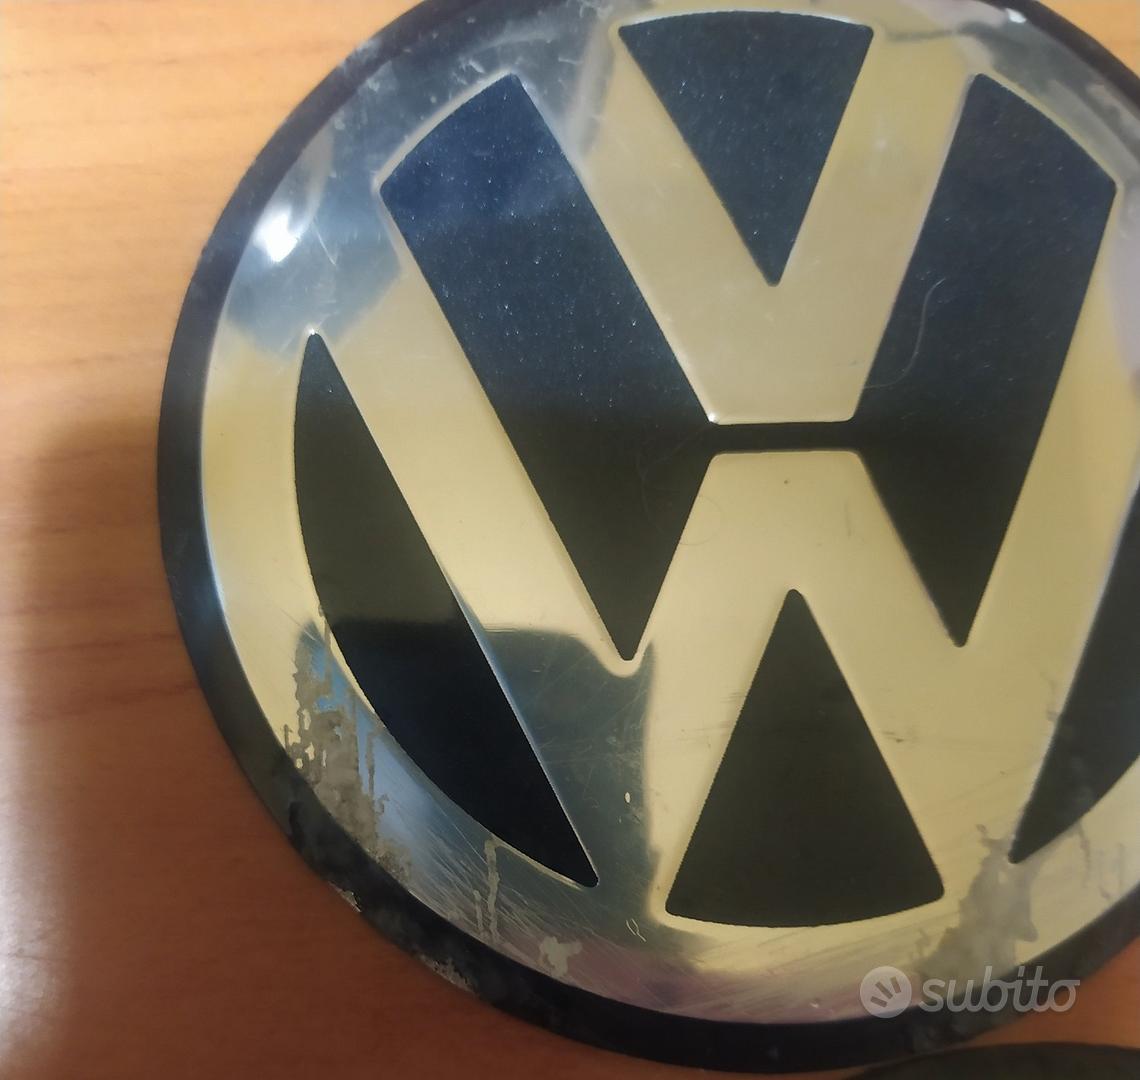 coprimozzo Volkswagen - Accessori Auto In vendita a Lucca